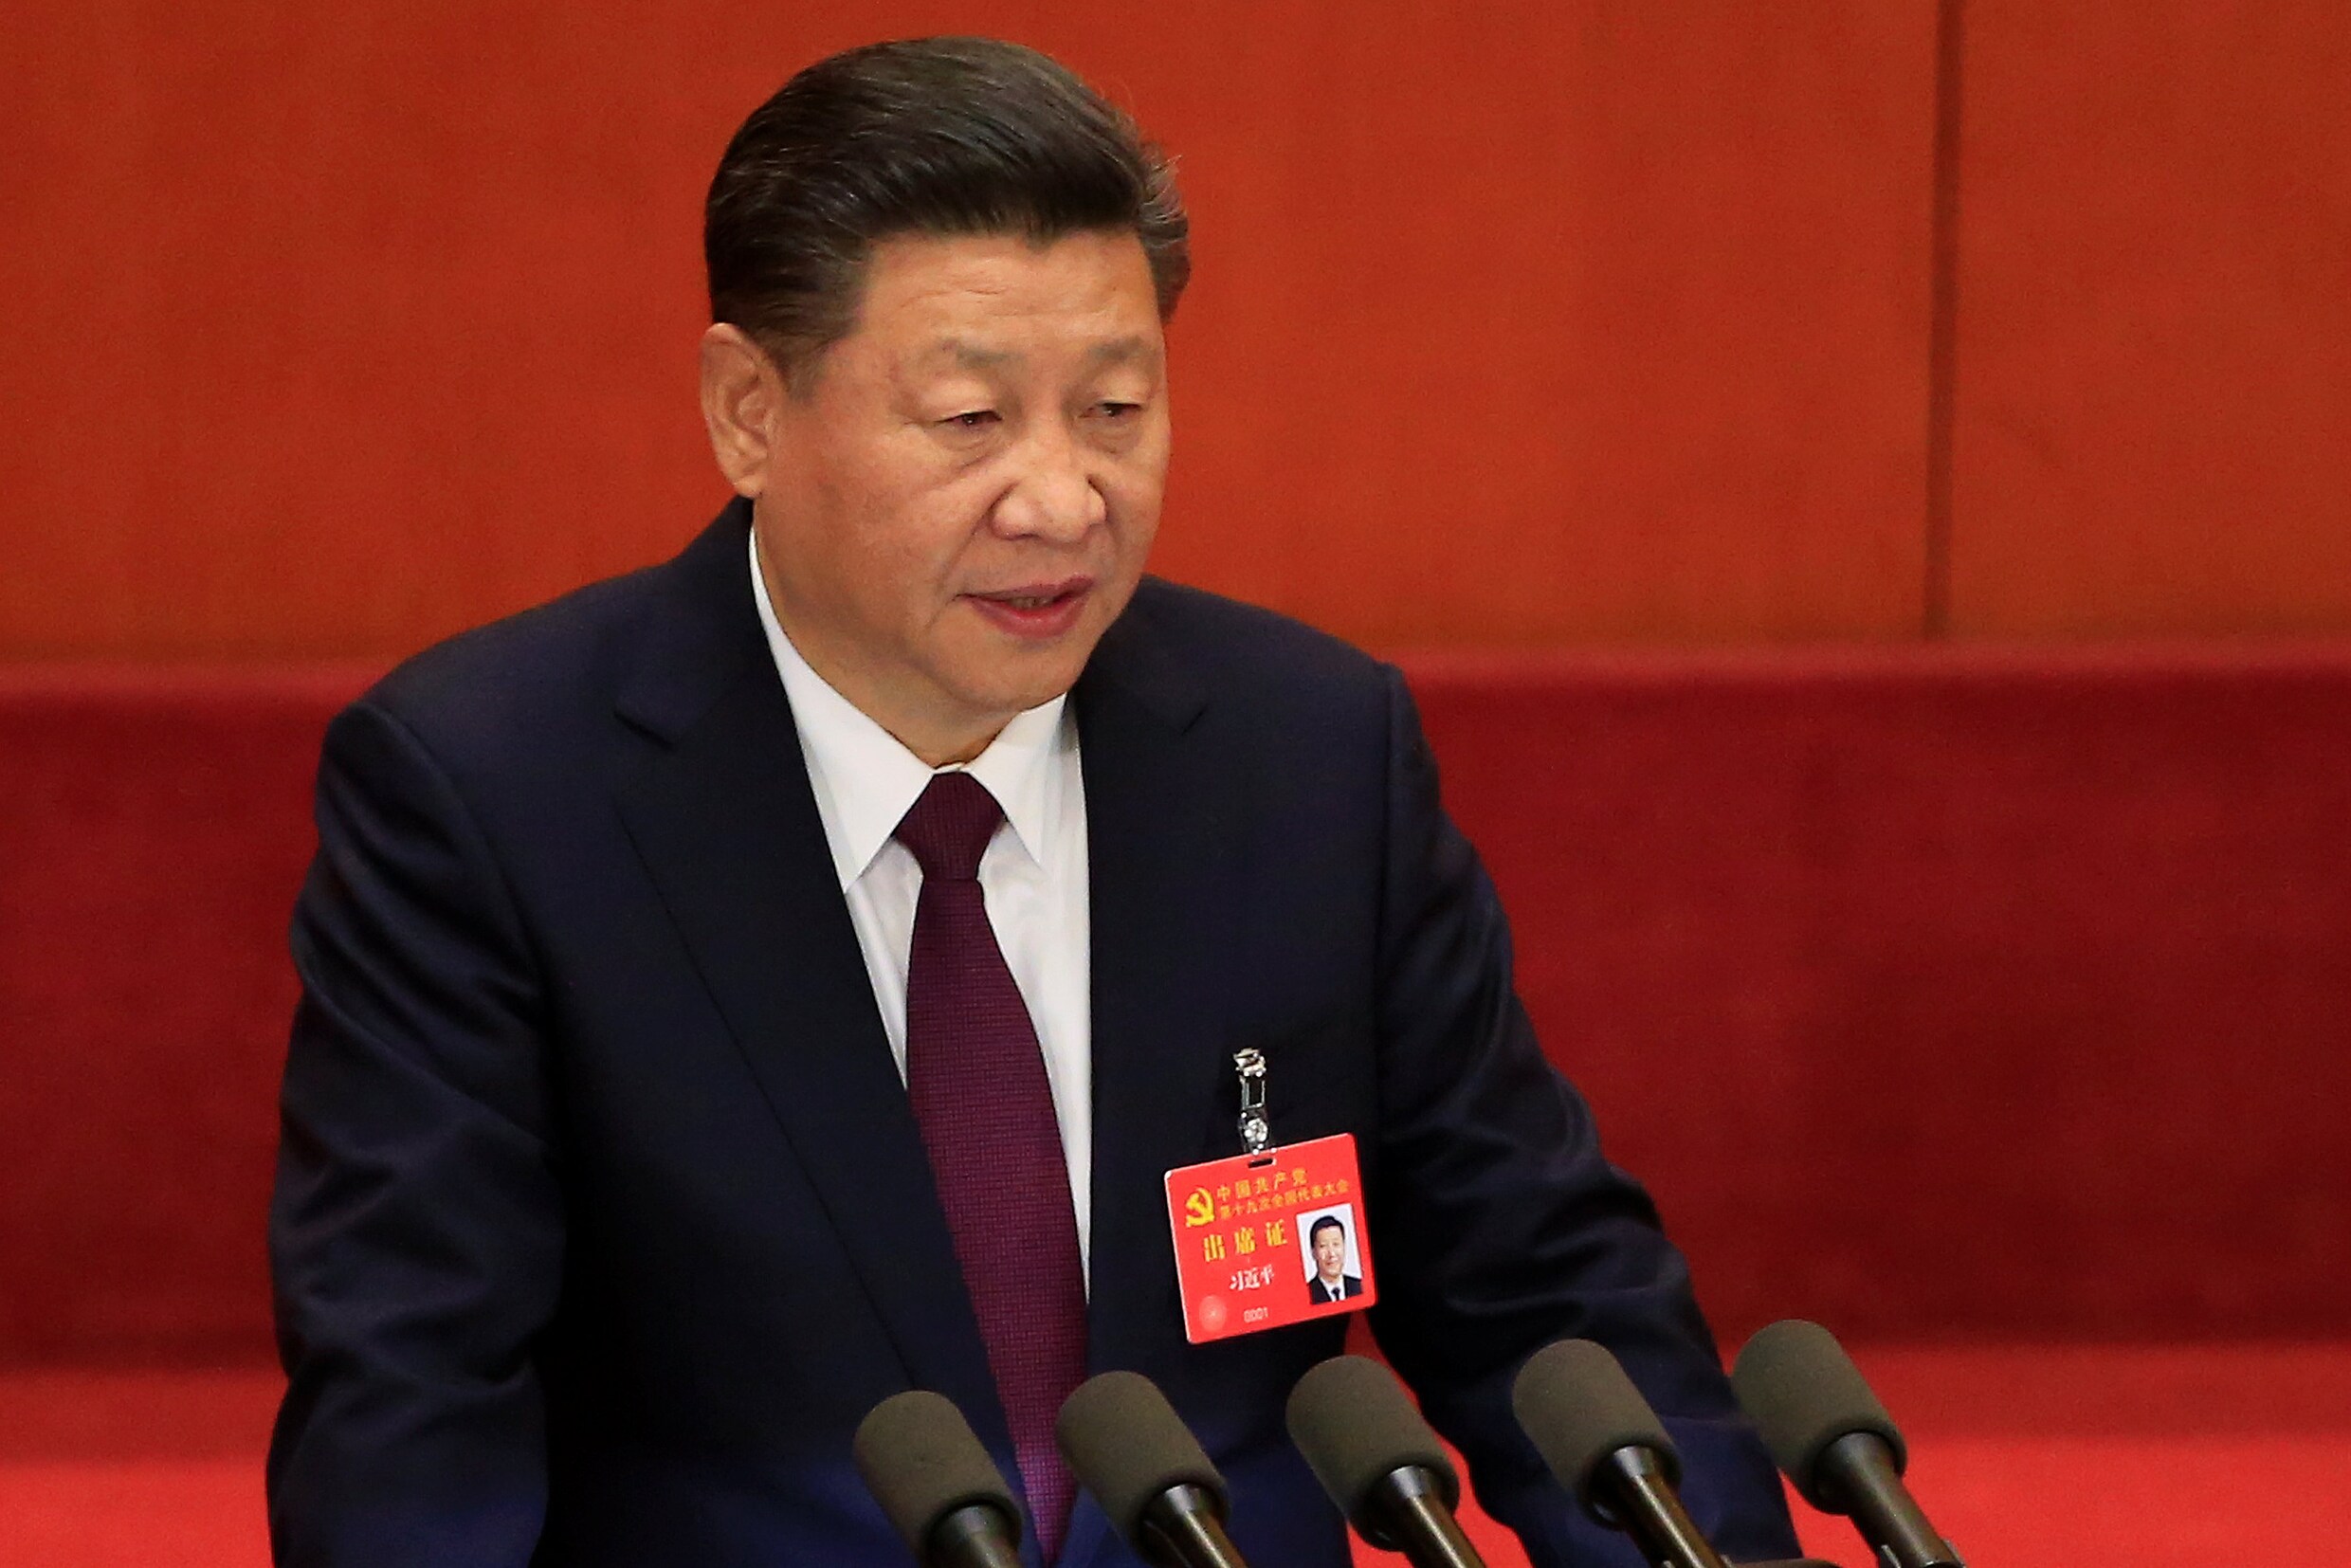 Chinese president Jinping op partijcongres: "Tegen 2020 zal armoede uitgeroeid zijn"